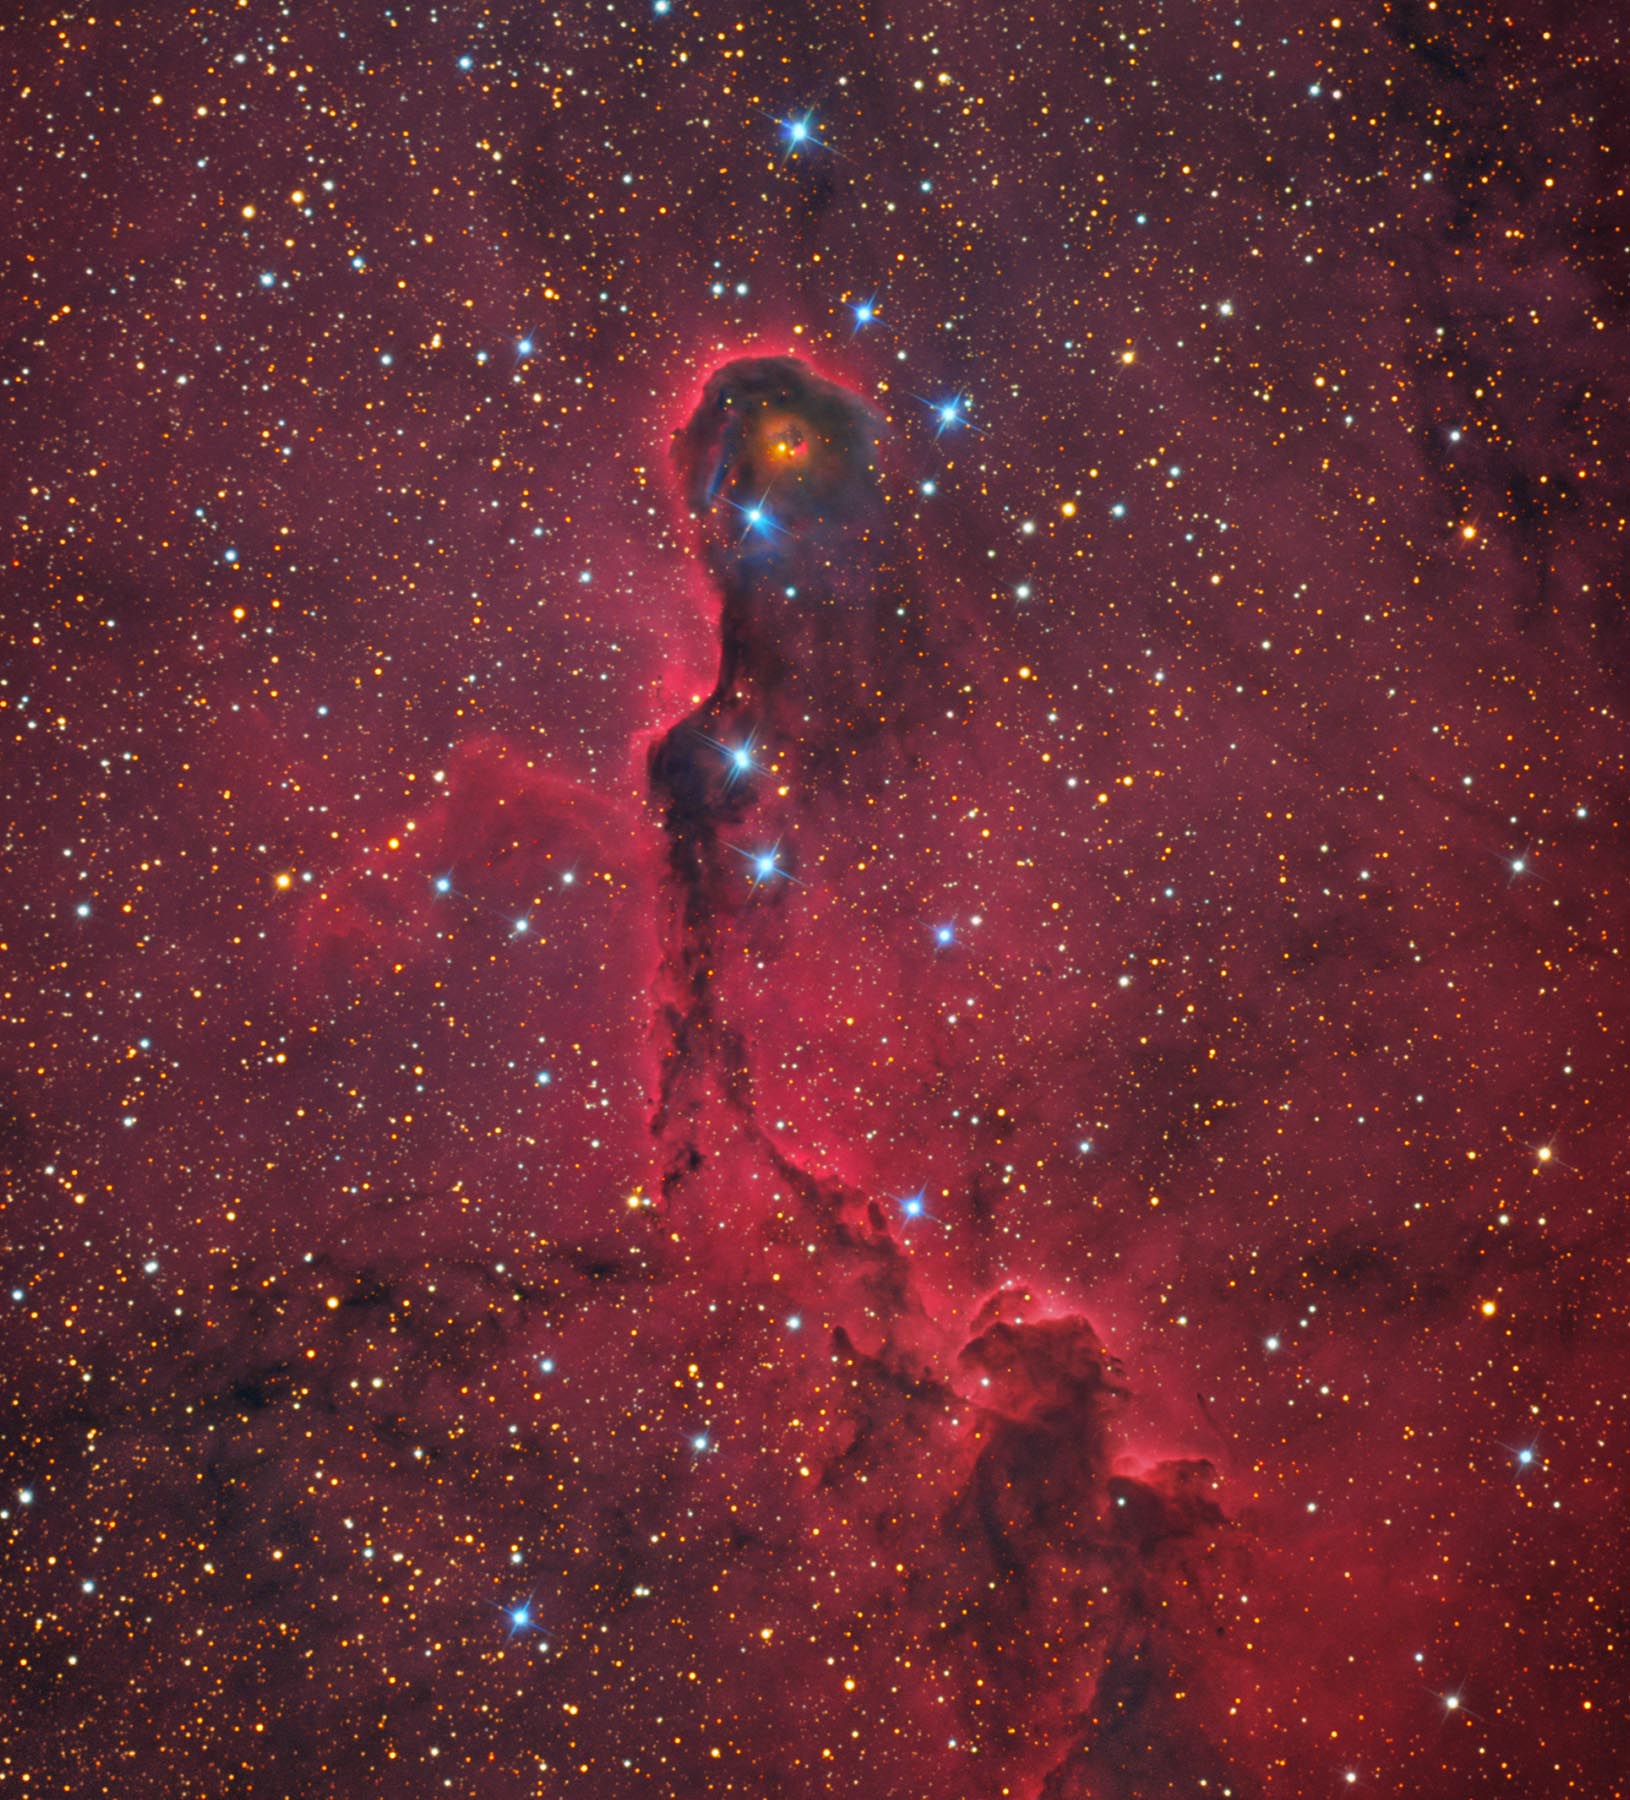 NGC 1396